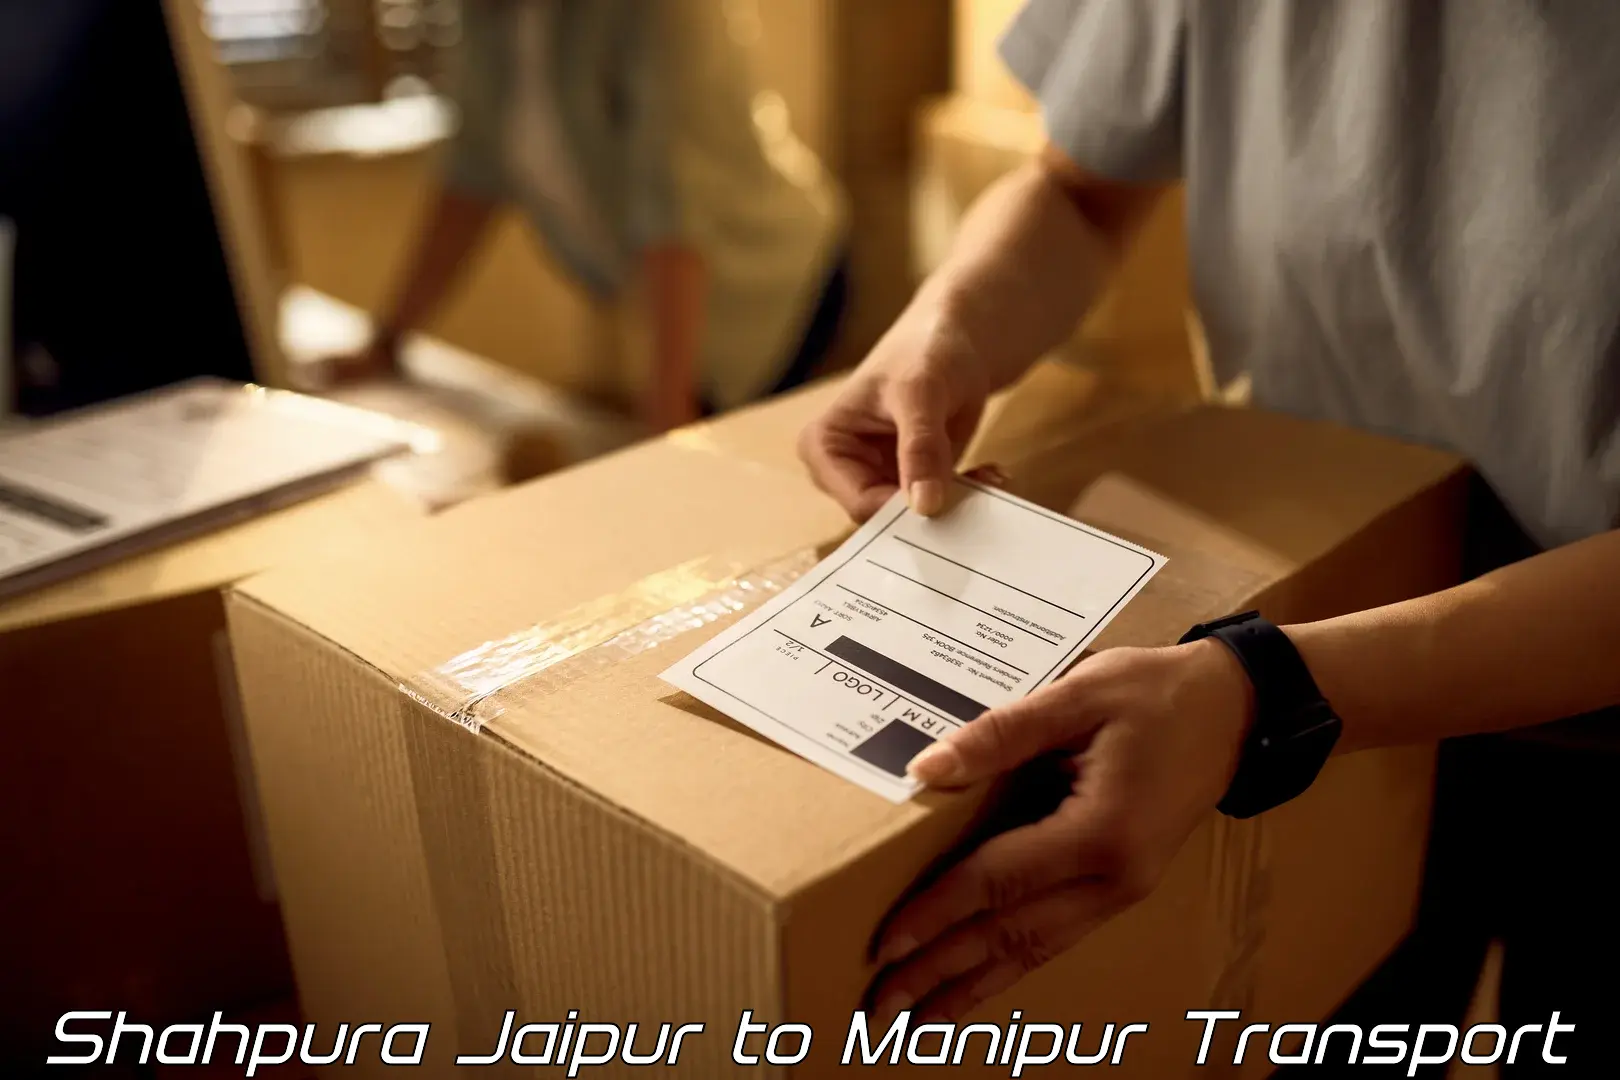 Online transport Shahpura Jaipur to Churachandpur